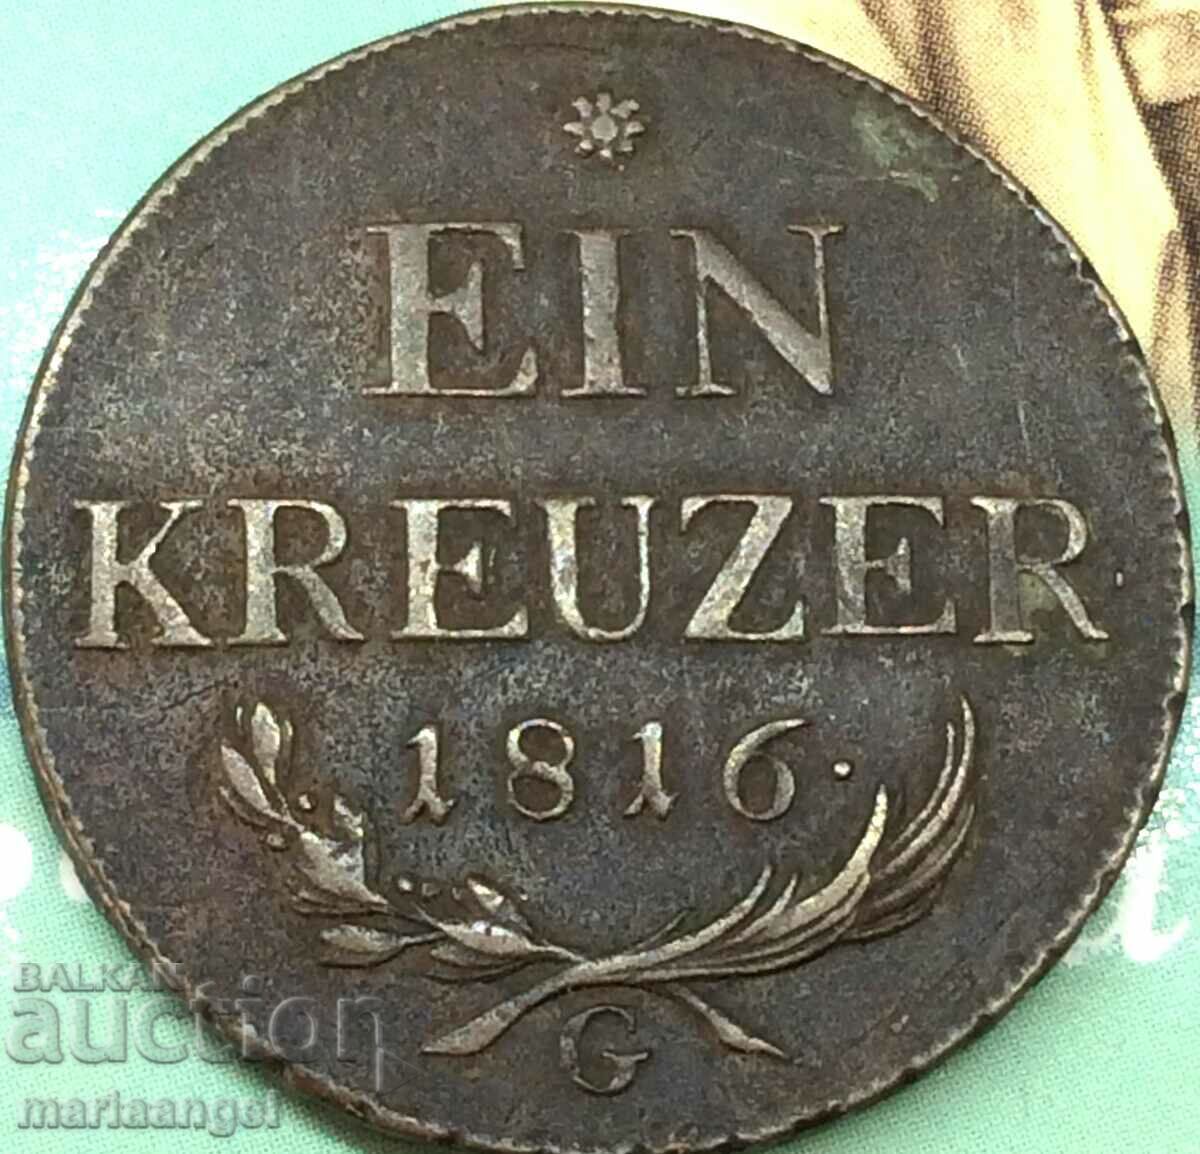 1 Kreuzer 1816 Austria G - Transilvania - destul de rar